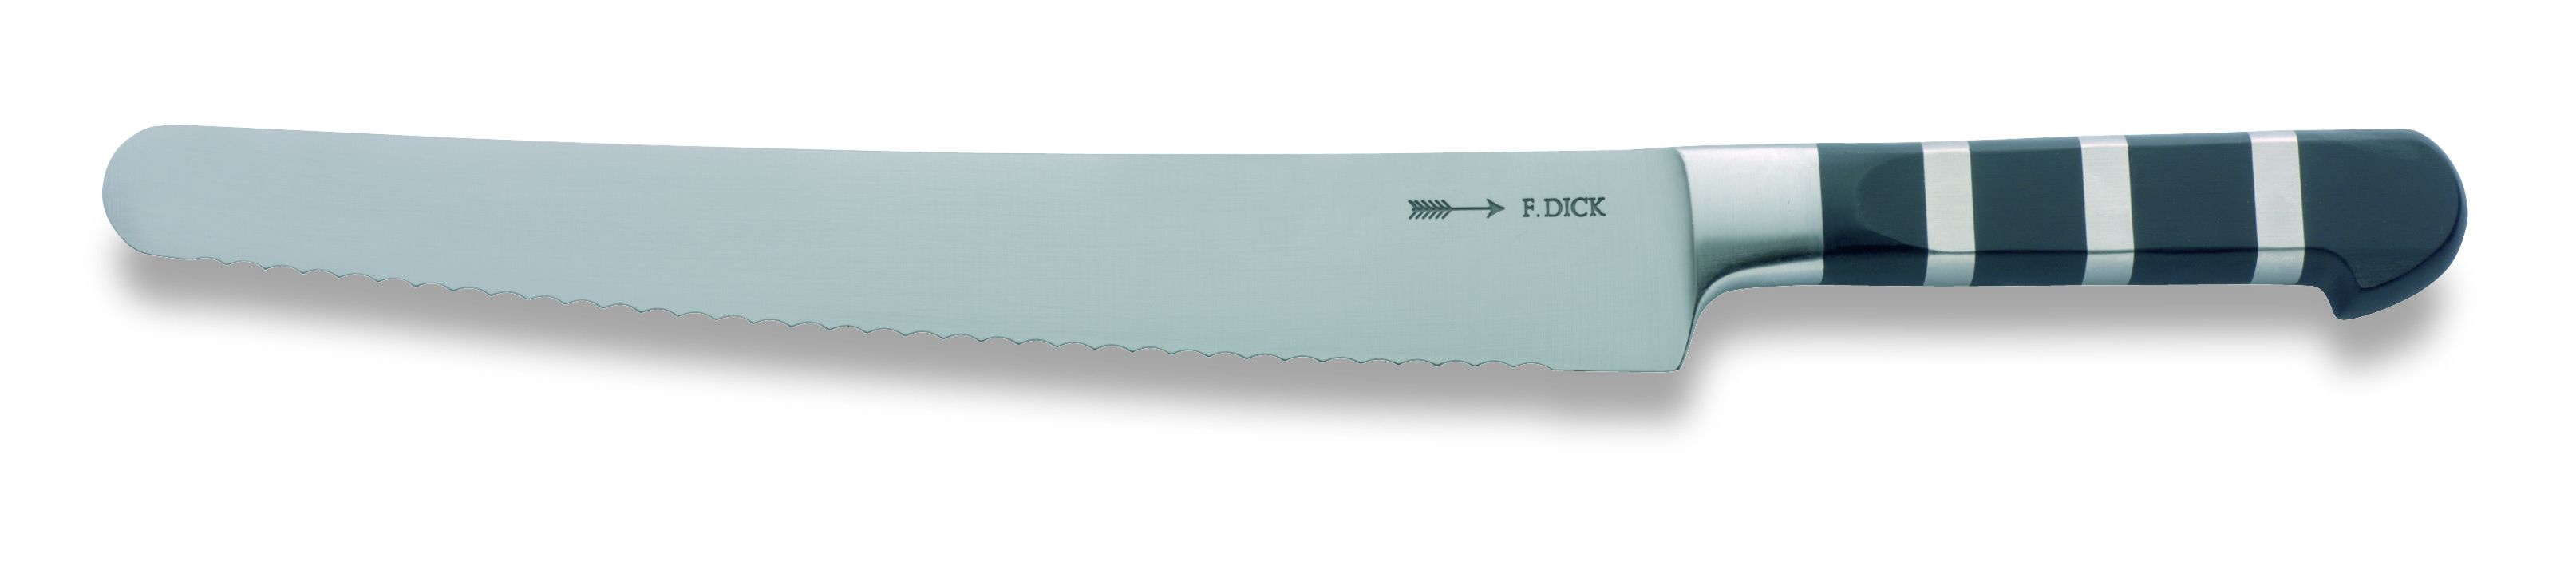 Víceúčelový nůž s vlnitým výbrusem ze série 1905 v délce 26 cm